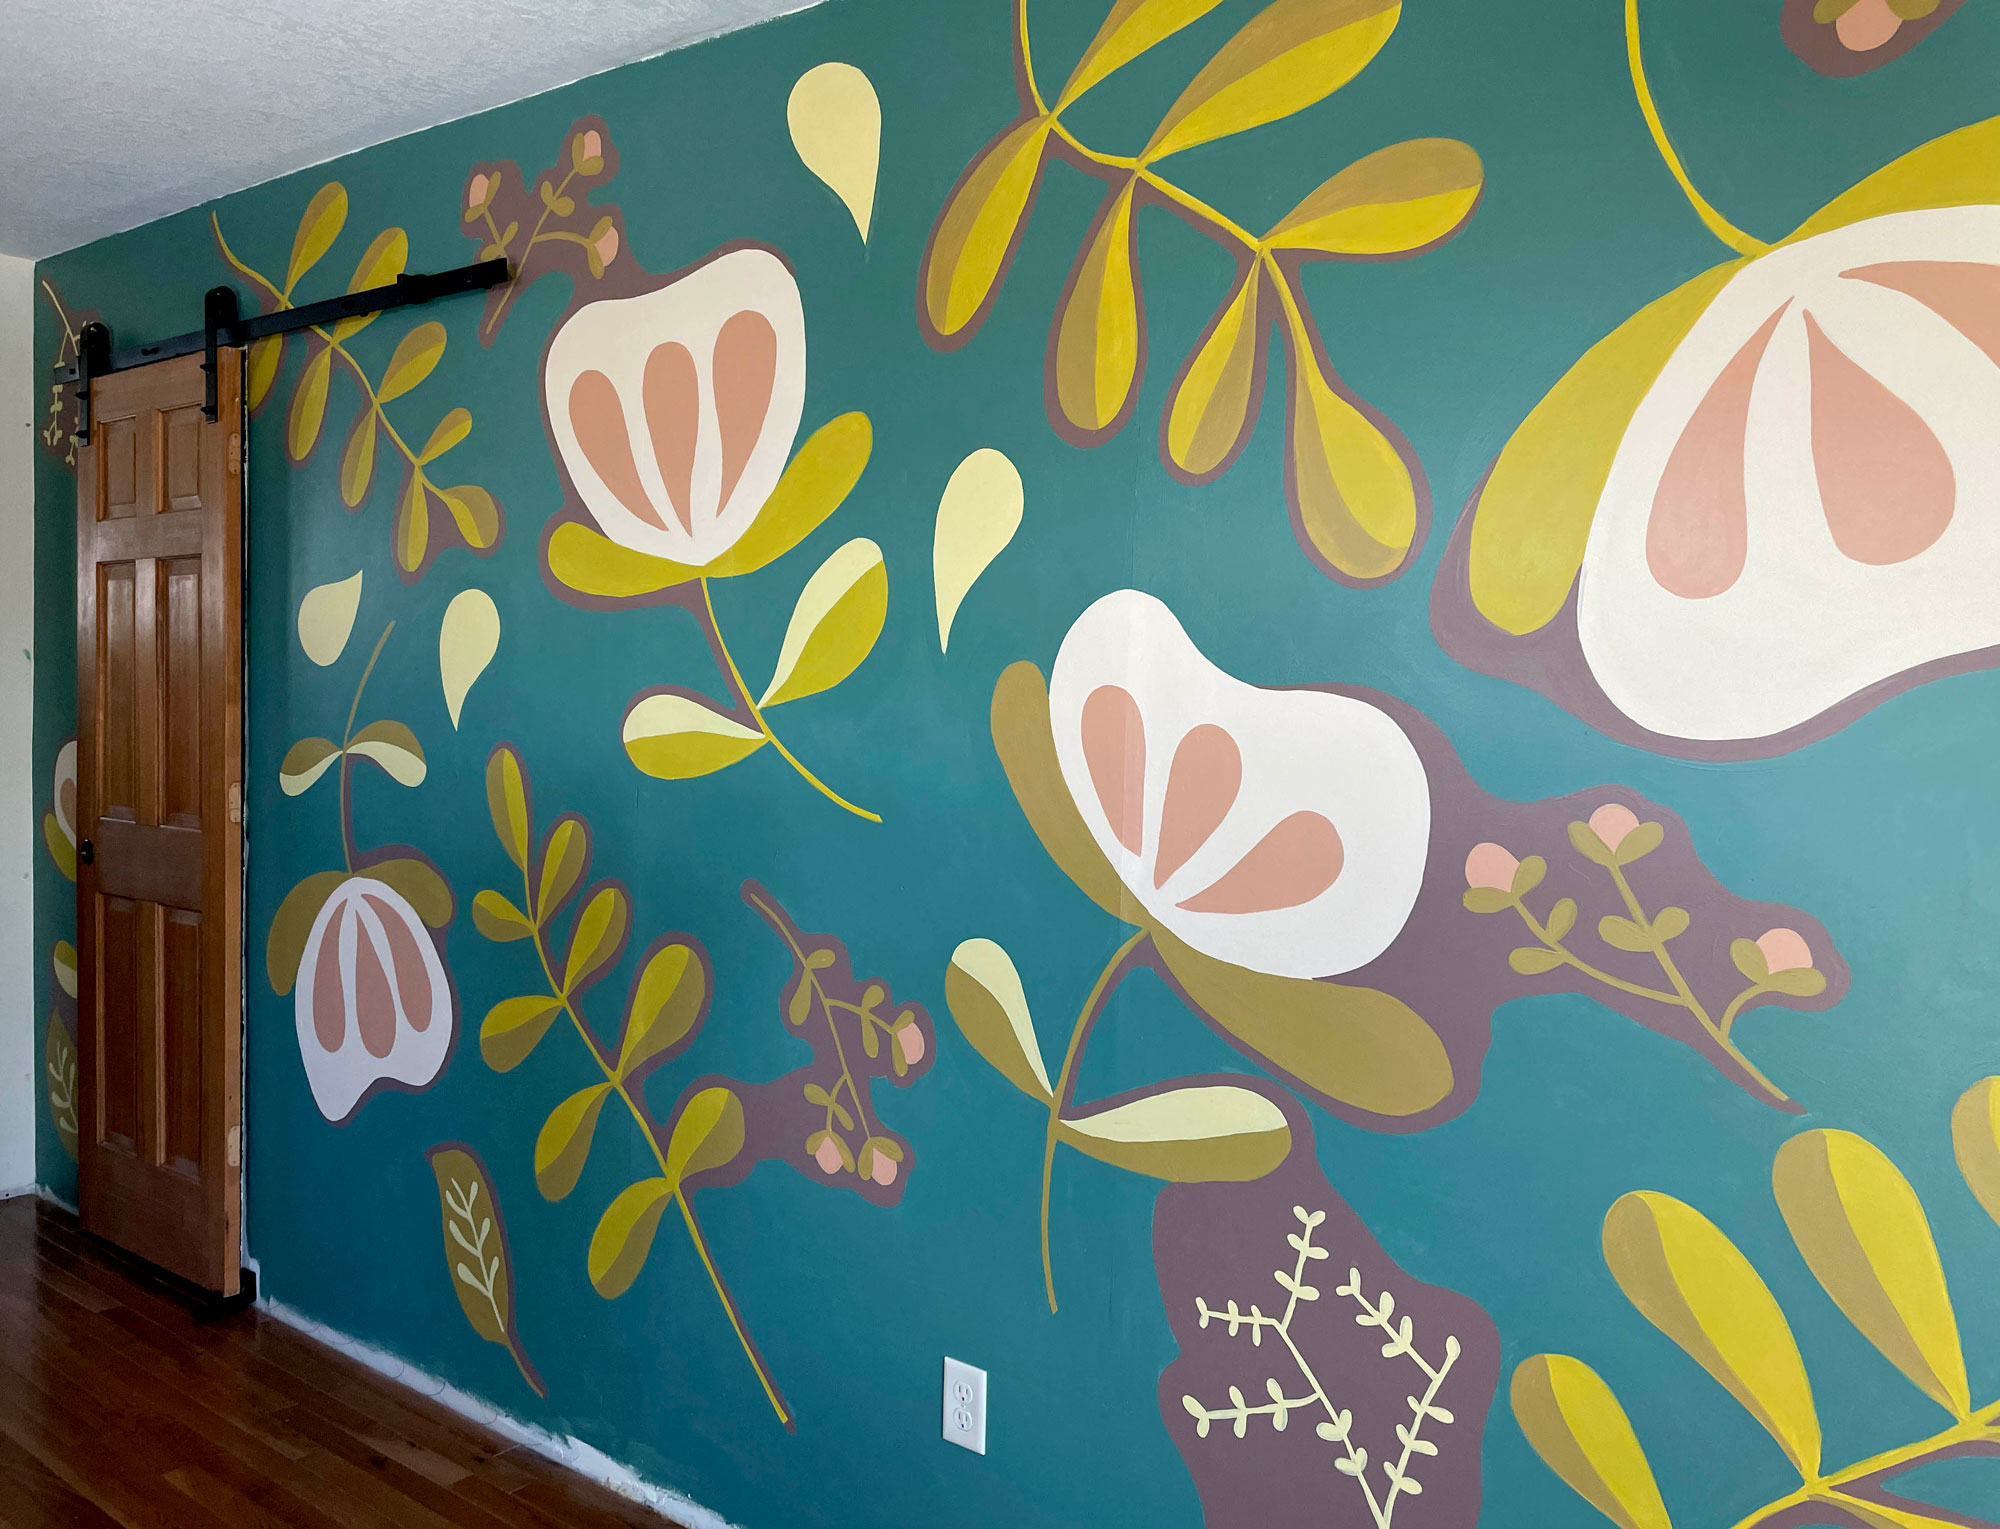 A playroom floral mural! YAY! :)